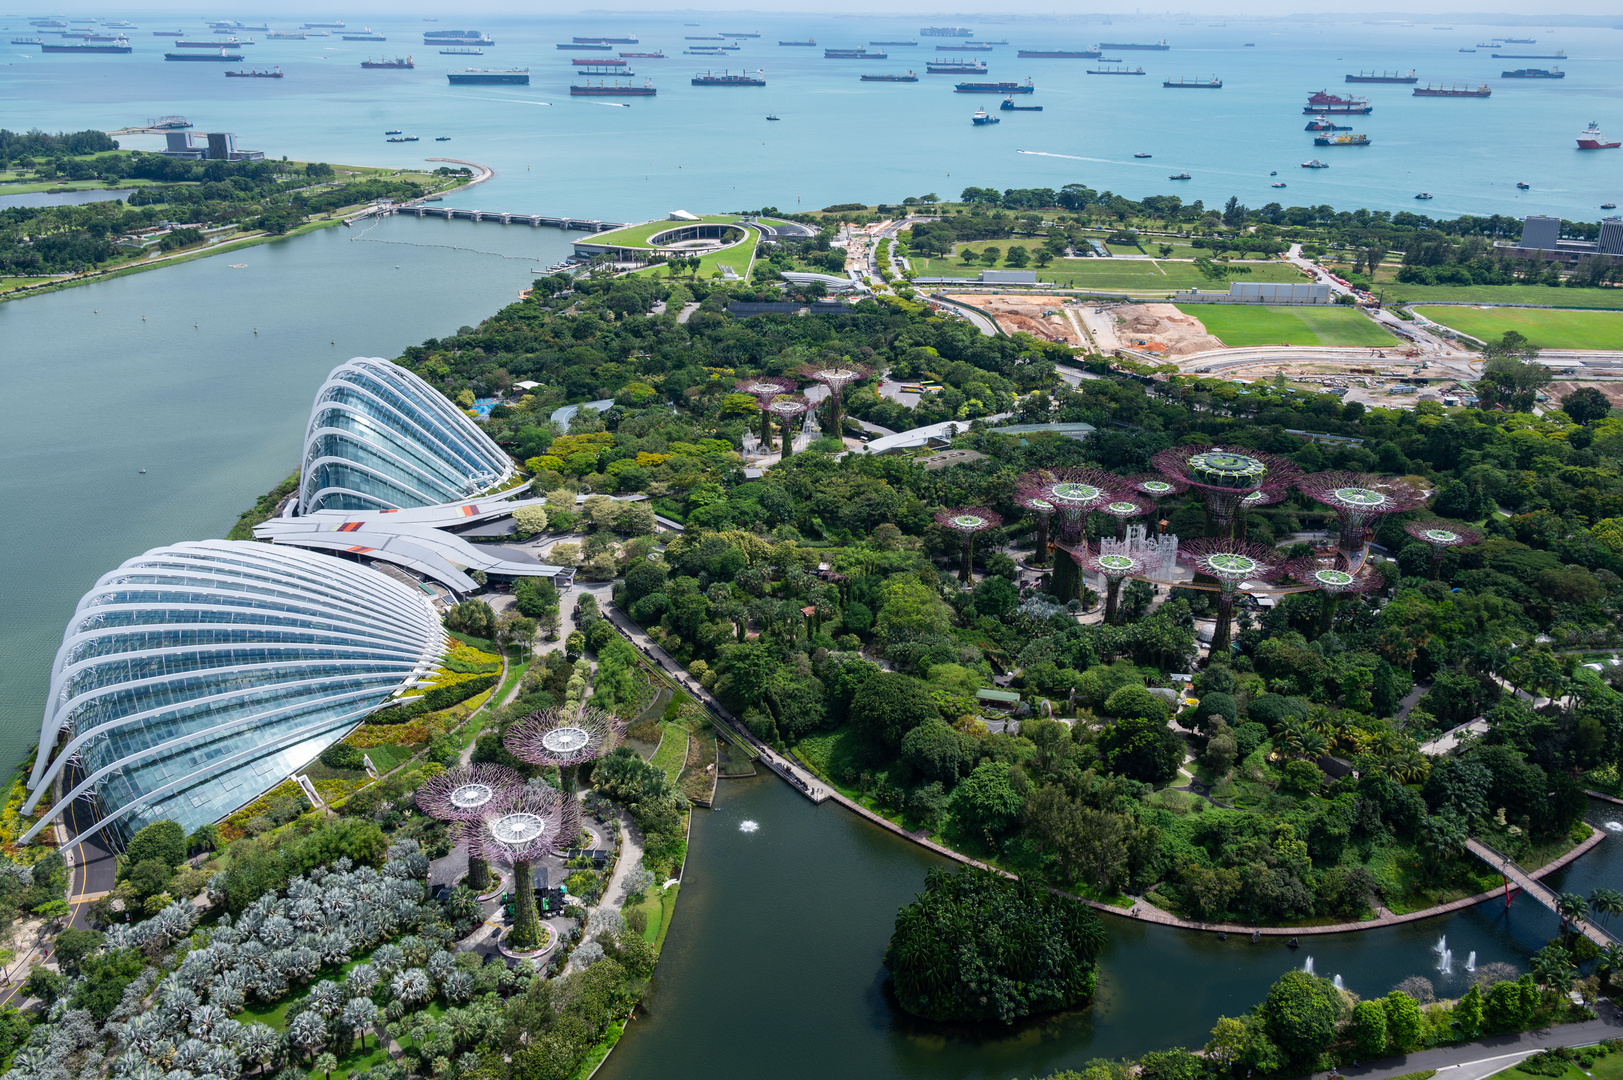 2023 Singapure Garden by the Bays mit Super Trees